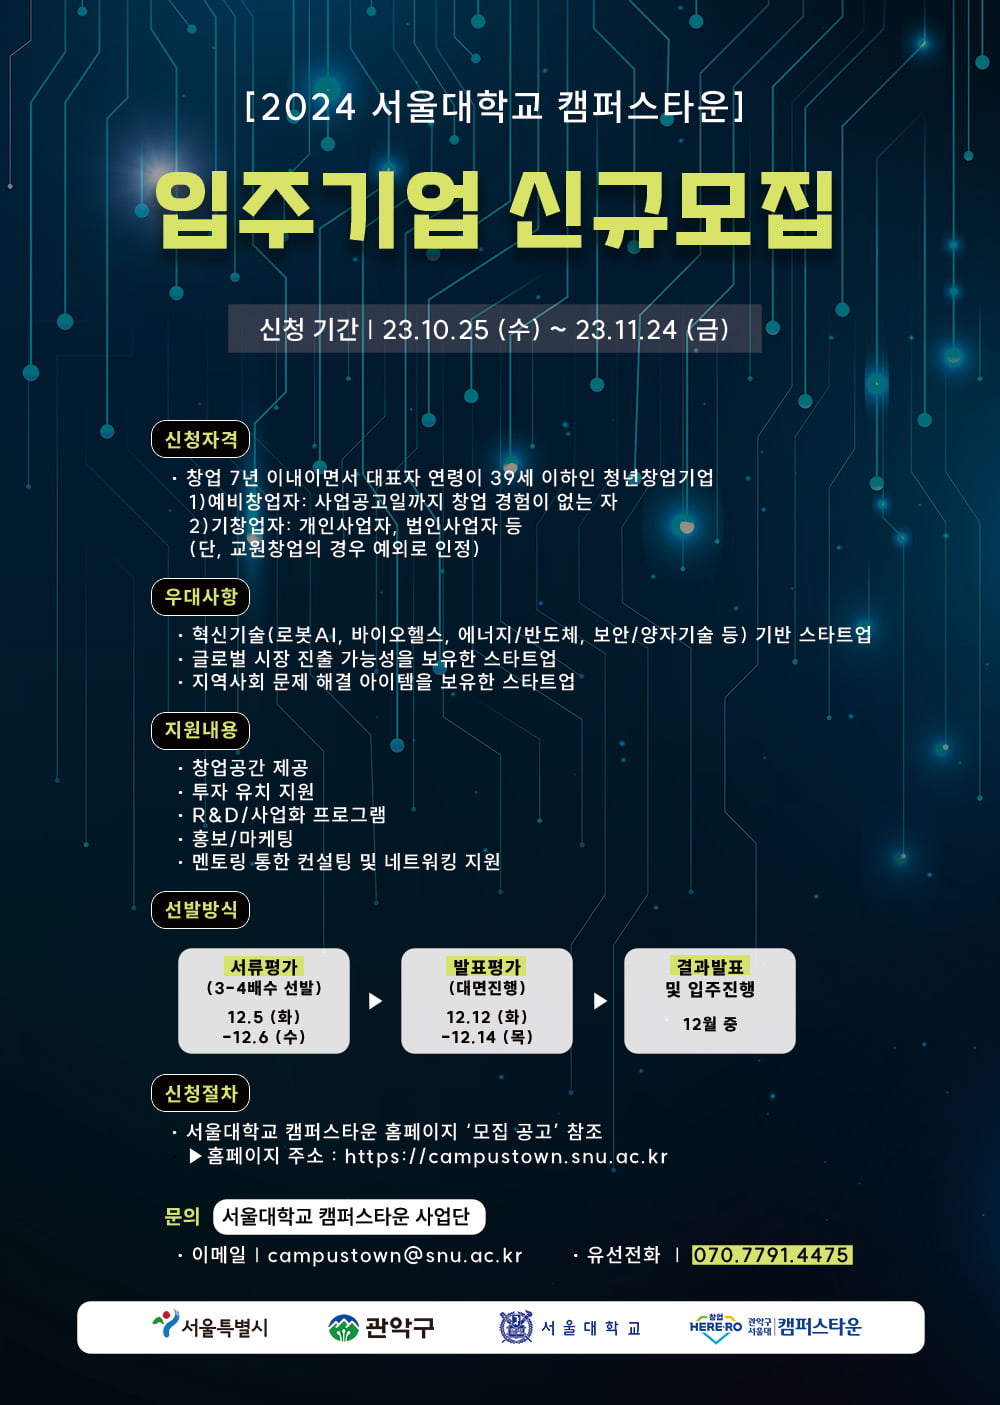 [2023 서울대학교 캠퍼스타운 스타트업 CEO] 음악 콘텐츠 플랫폼 앱을 개발하는 스타트업 ‘모이지’